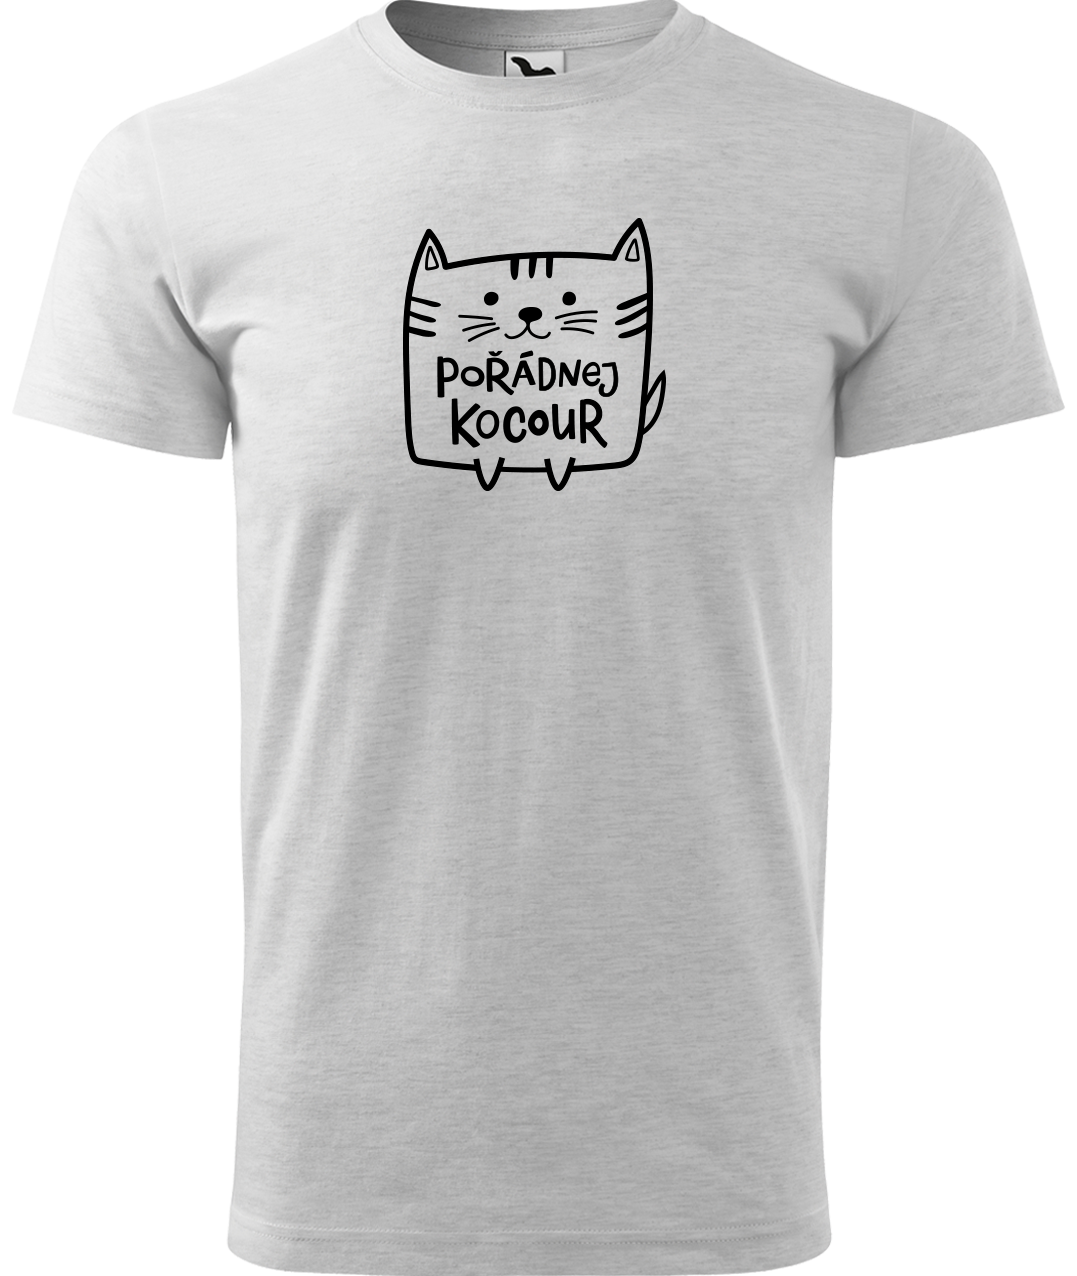 Pánské tričko s kočkou - Pořádnej kocour Velikost: S, Barva: Světle šedý melír (03)